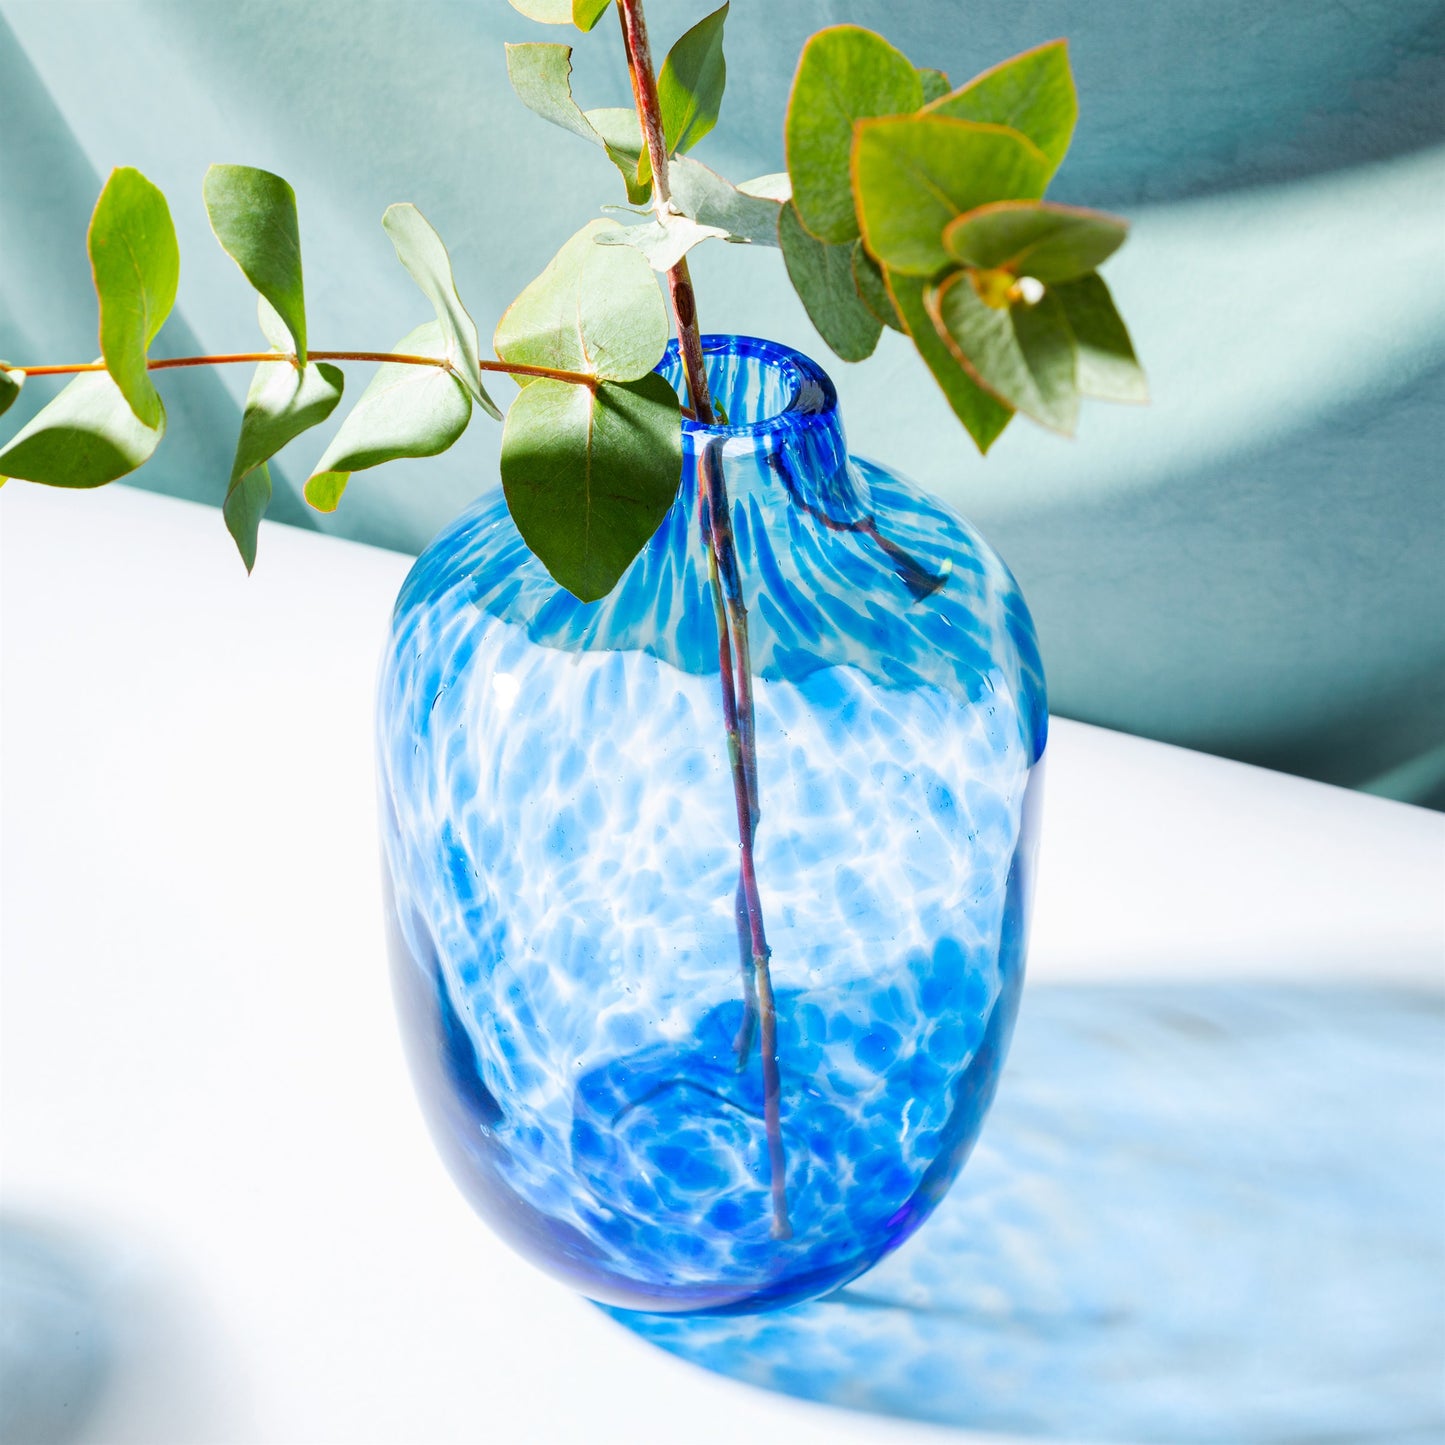 GLEE129 Large Speckled Blue Glass Vase